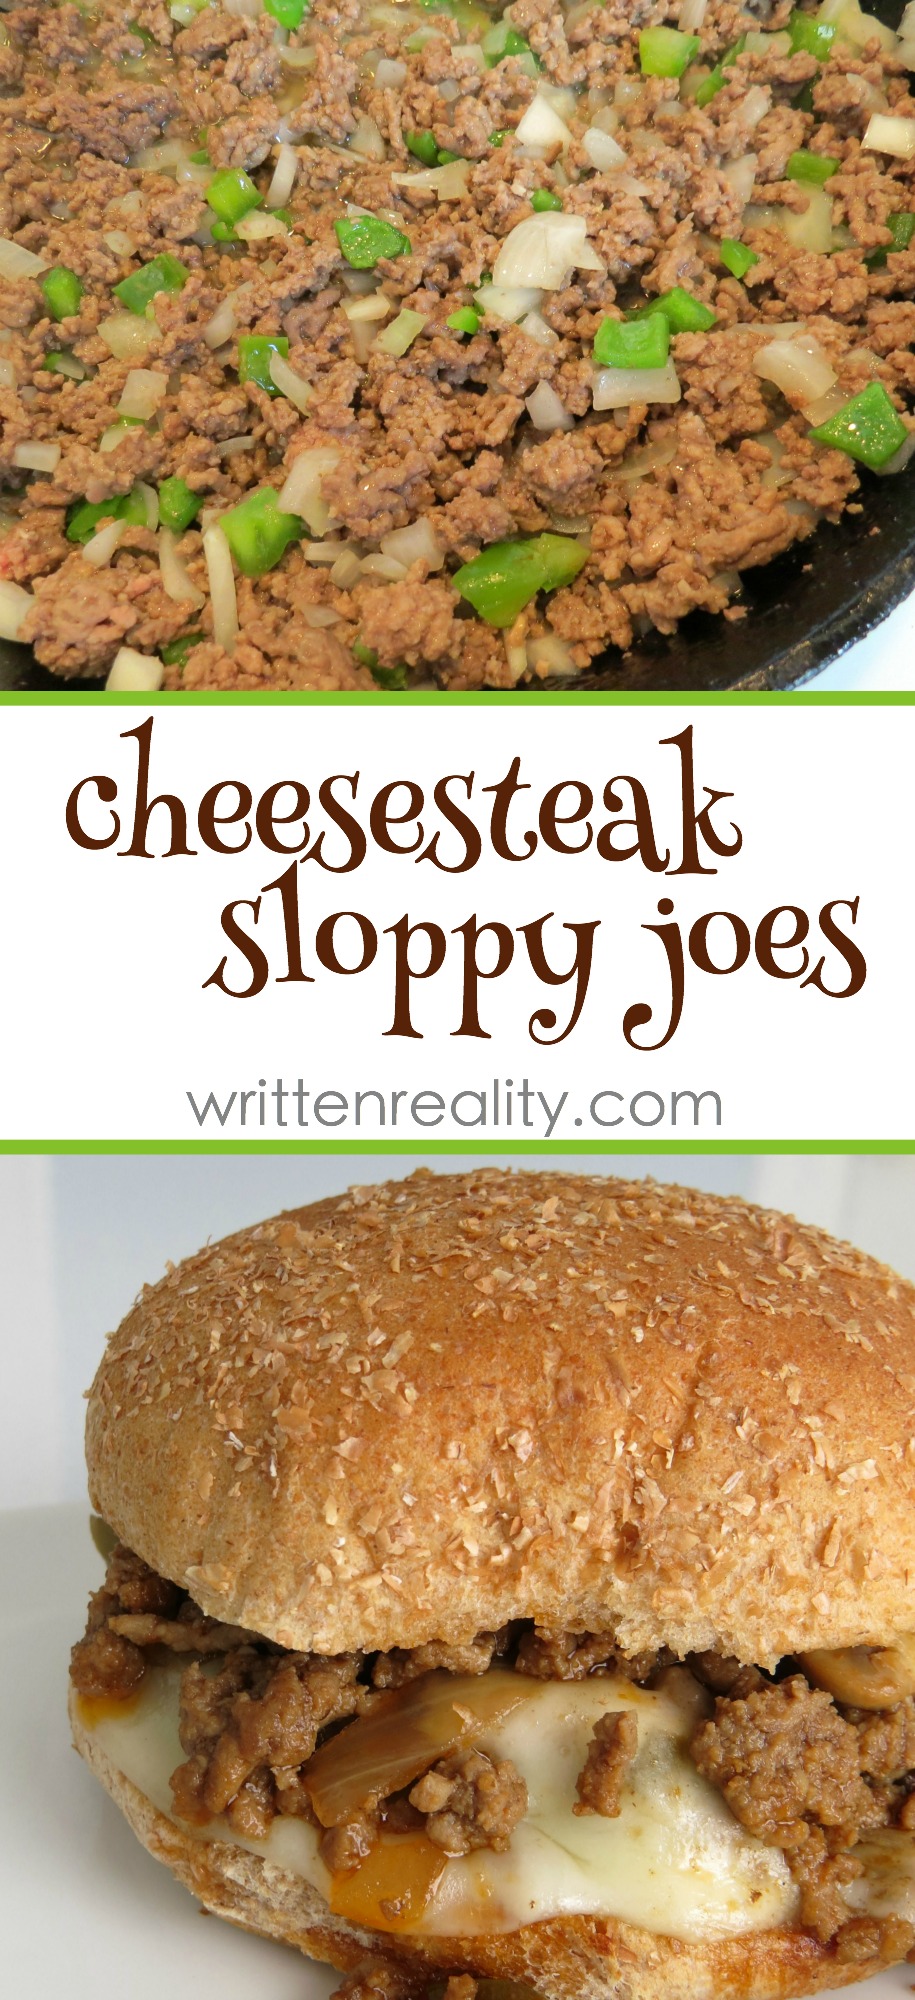 Cheesesteak Sloppy Joes Recipe